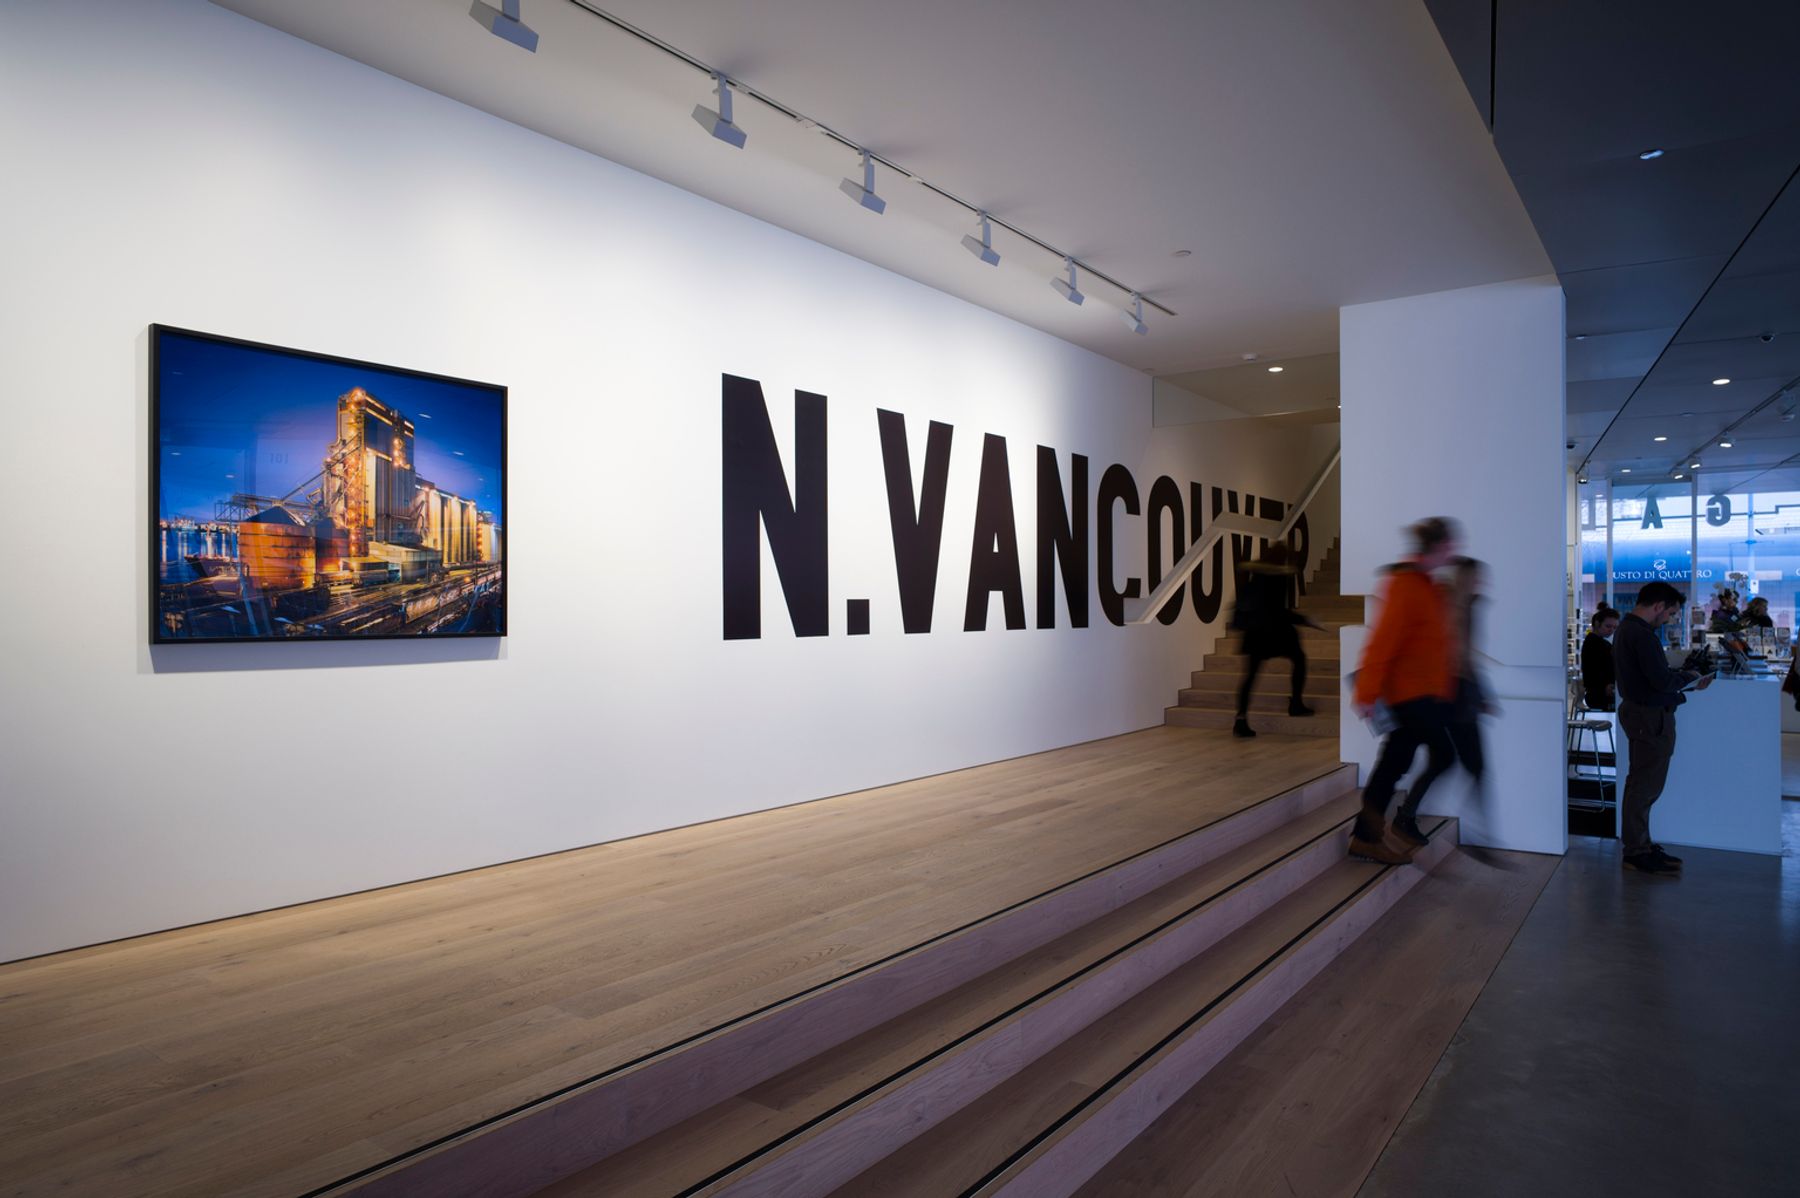 The Polygon Gallery, Vancouver. Architektur: Patkau Architects, Vancouver. Fotografie: Moritz Hillebrand, Zürich.